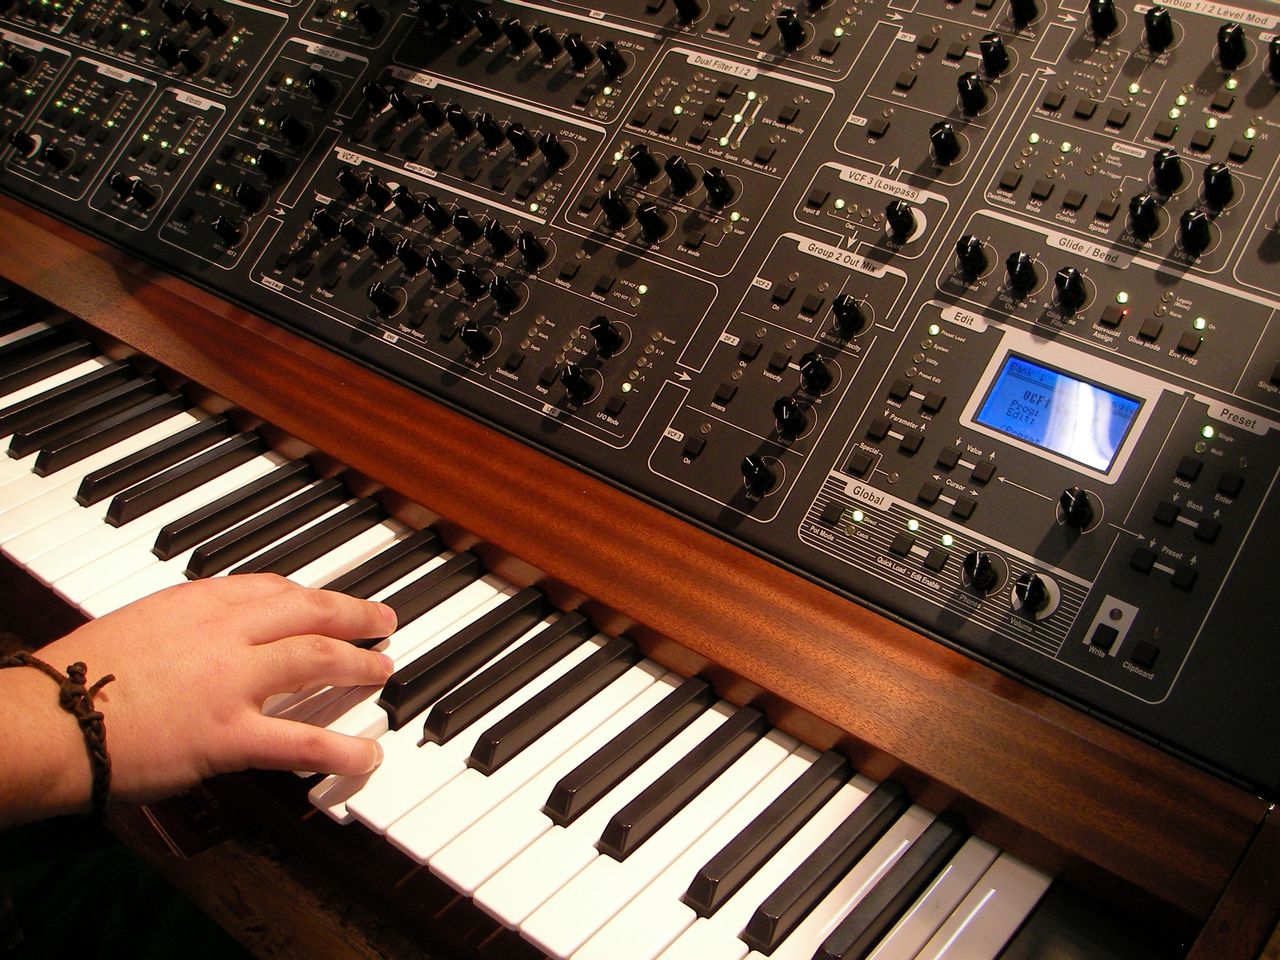 Nadchodzi MIDI 2.0 – nowy standard dla instrumentów i programów muzycznych